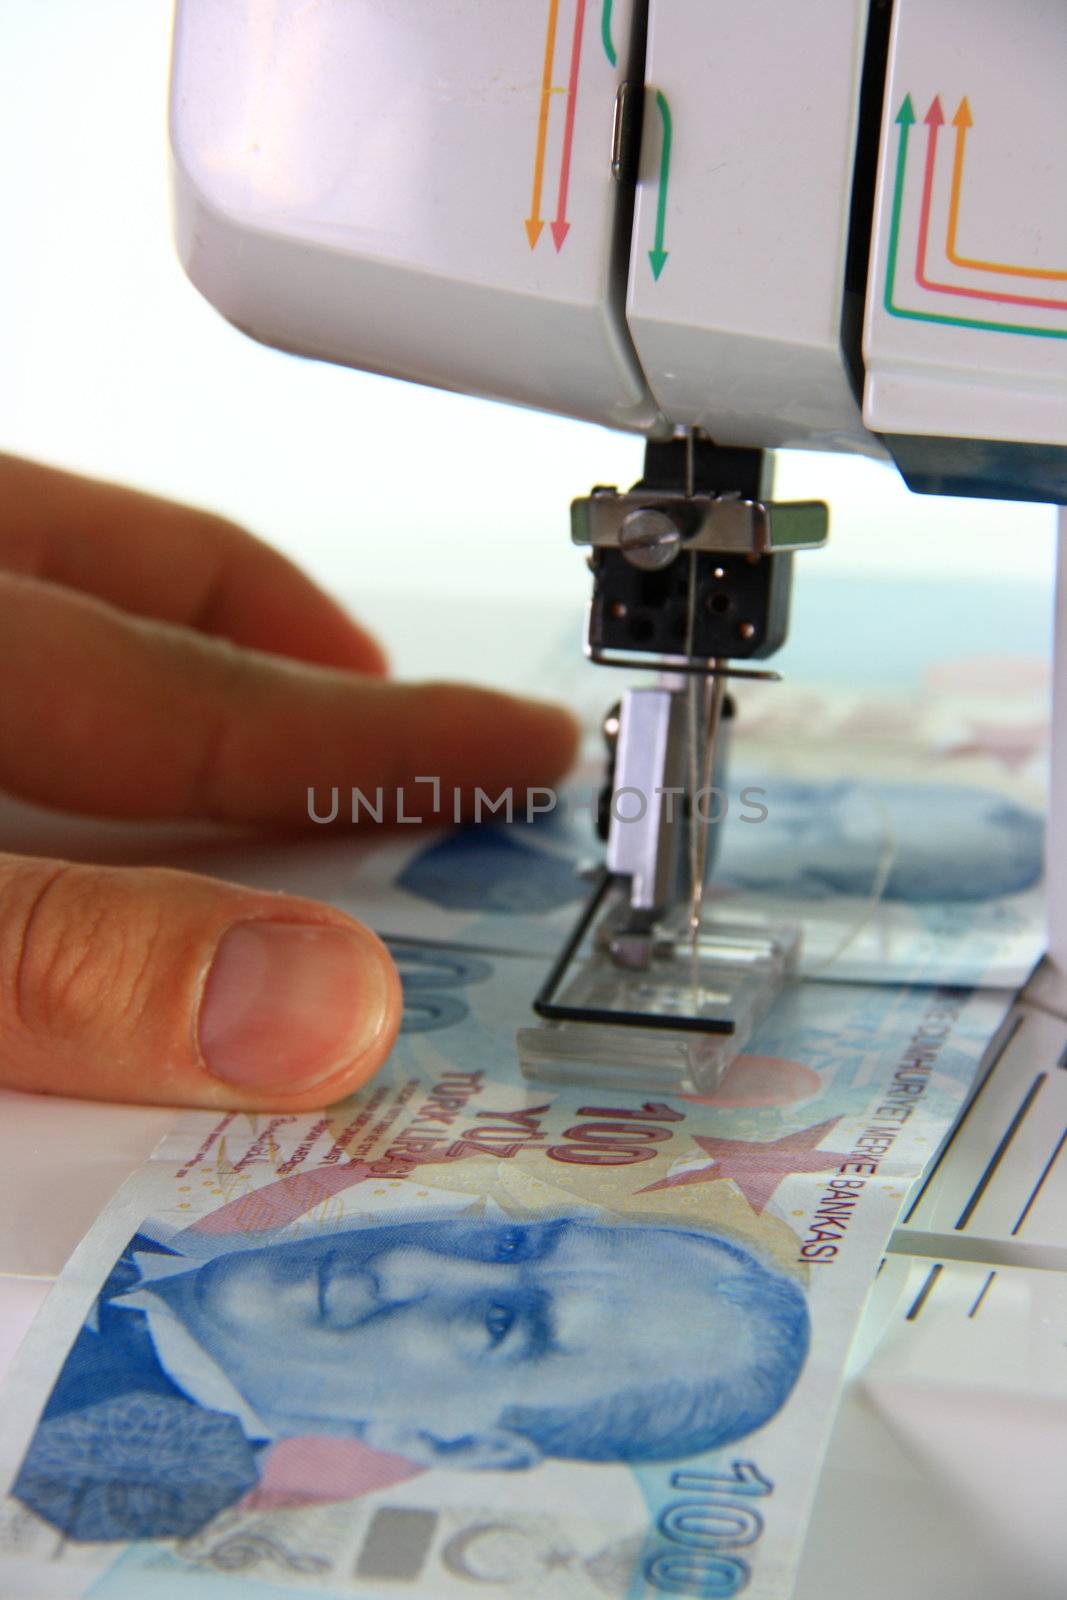 sewing machine sewing money turkish lira on white background